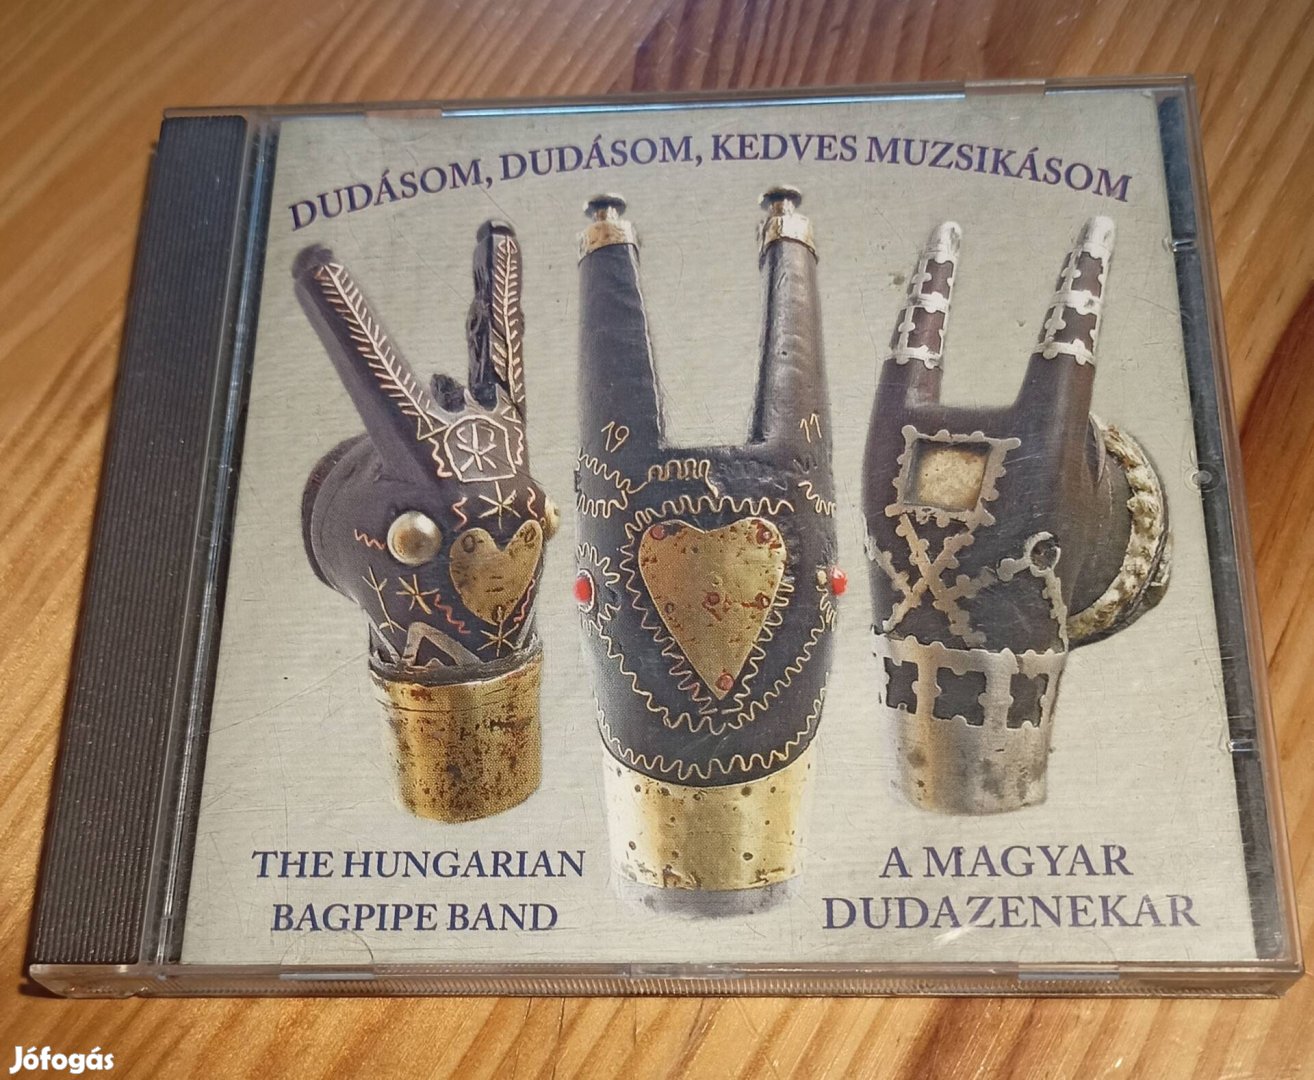 Dudásom,dudásom kedves muzsikásom - A magyar dudazenekar CD